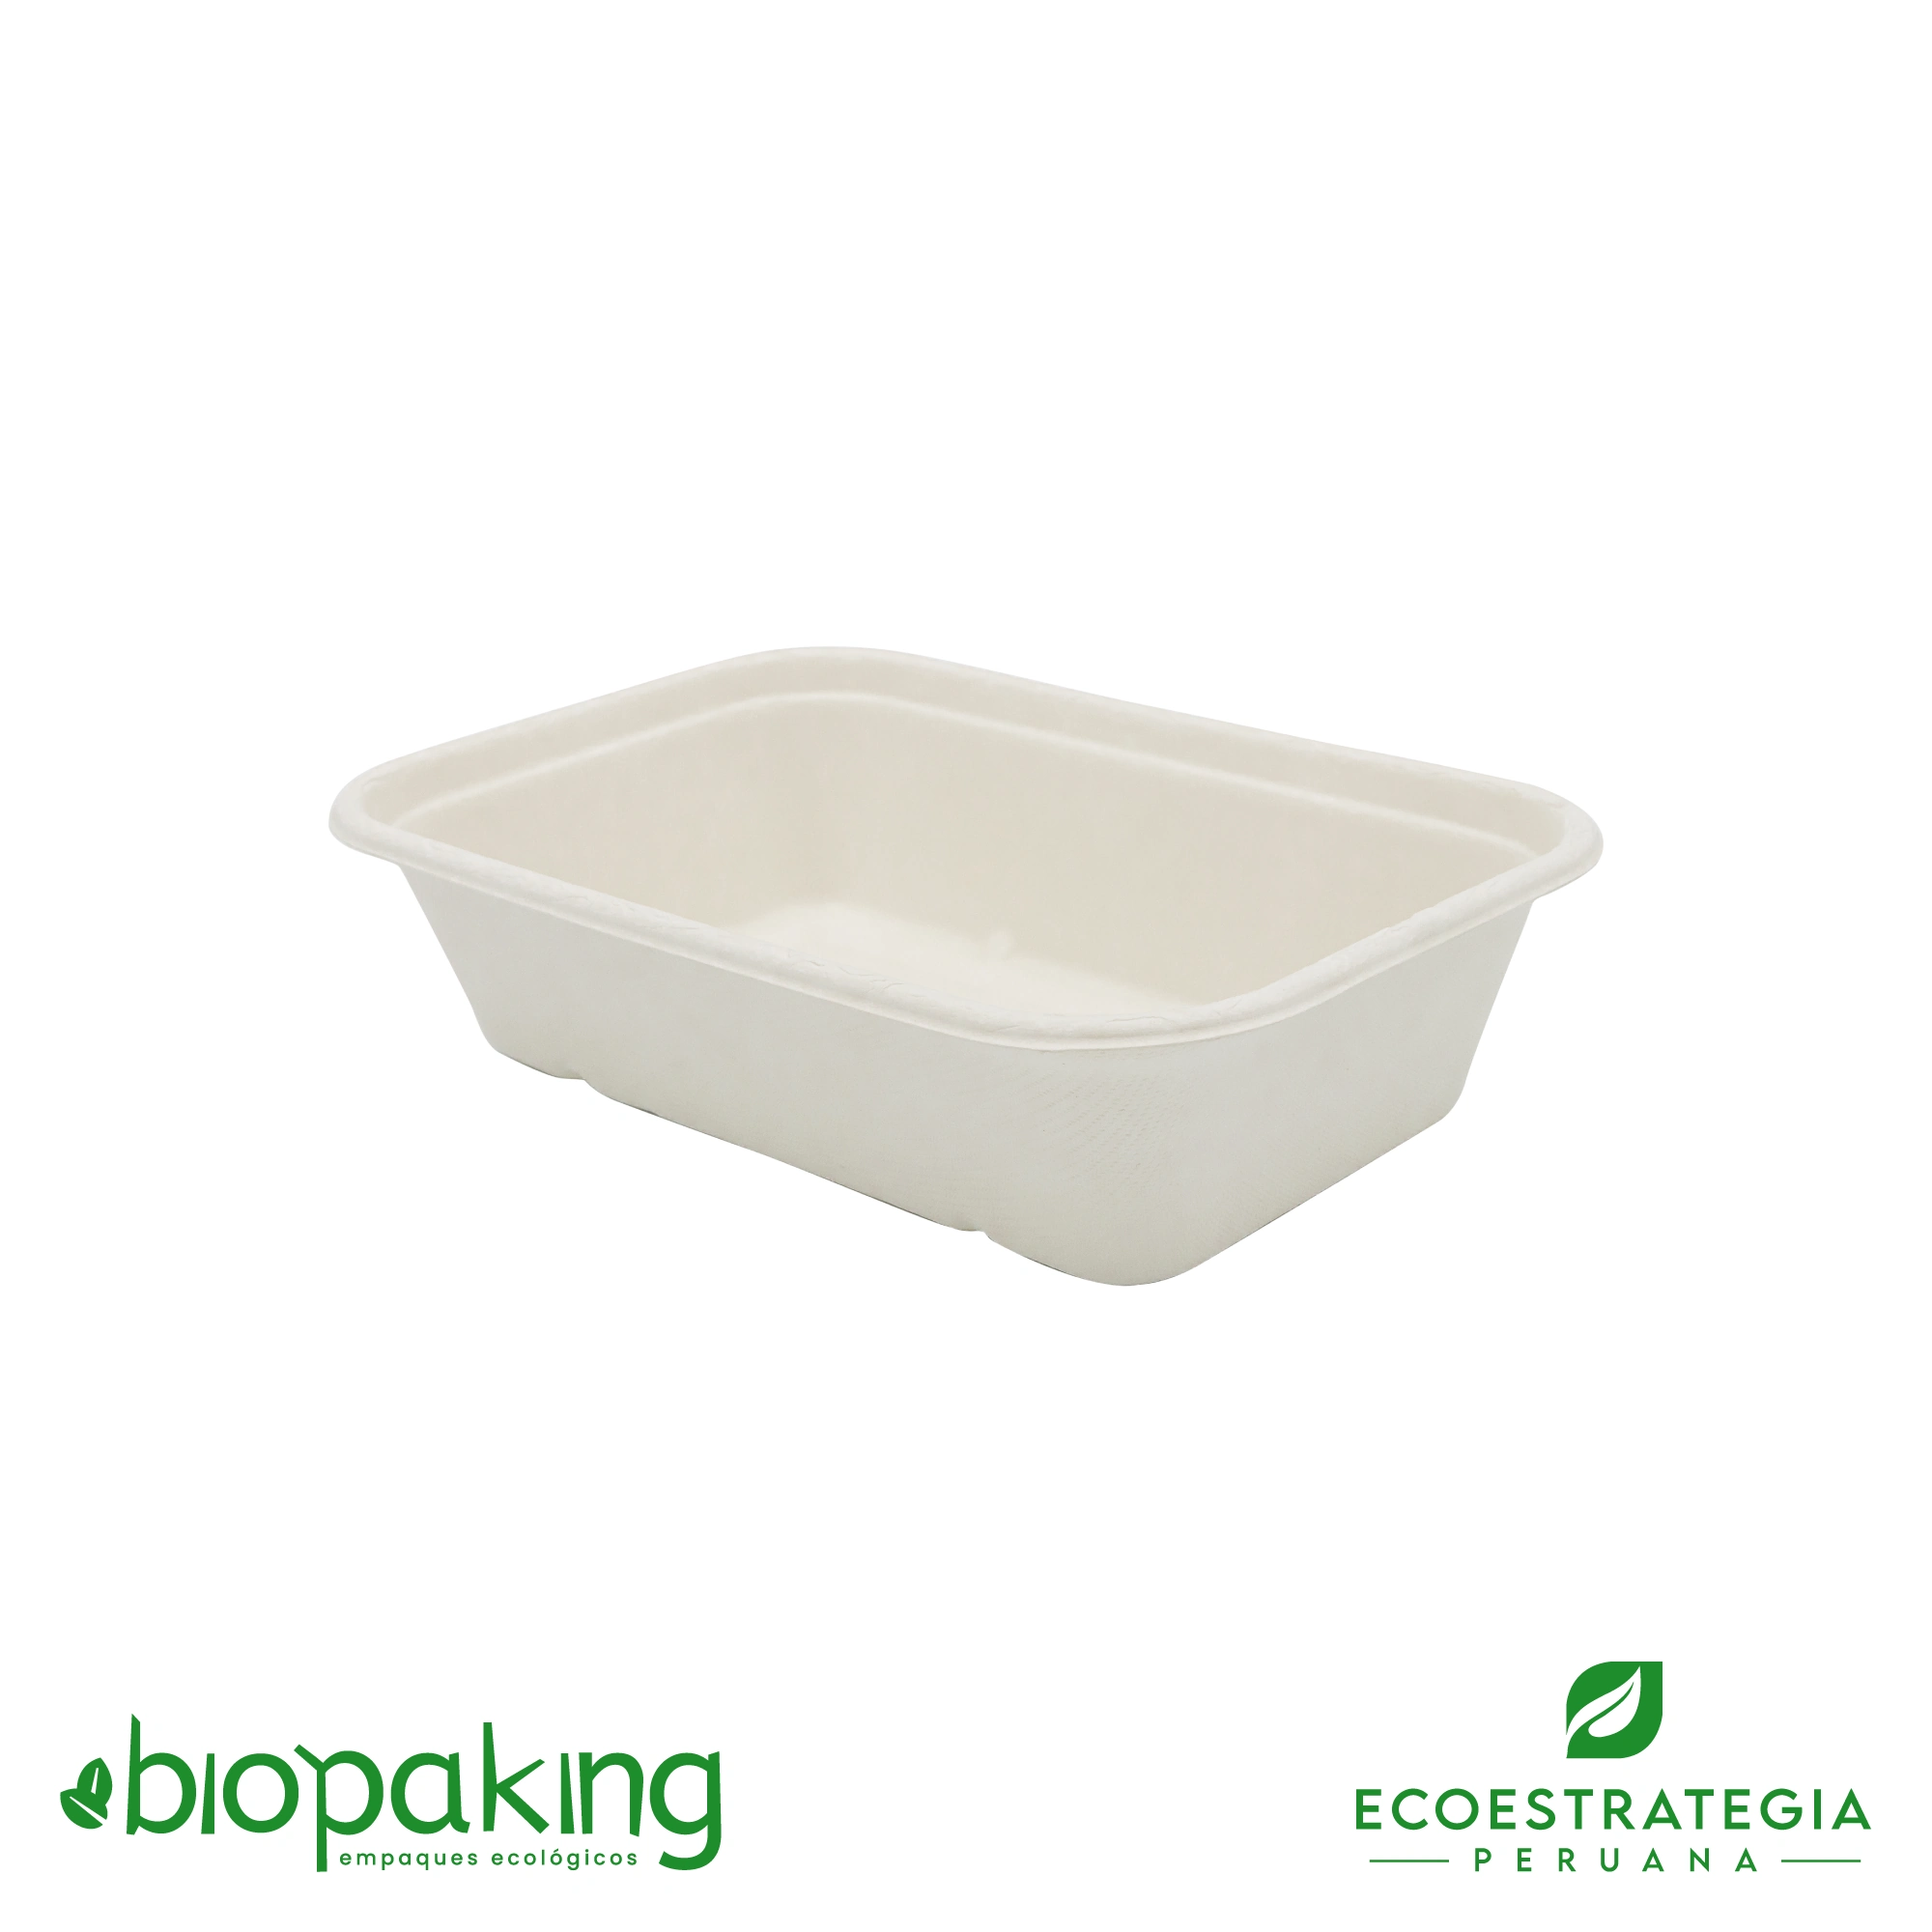 Esta bandeja biodegradable es de caña de azúcar y pesa 32gr. Envases descartables con gramaje ideal, cotiza tus bandejas, empaques, platos y tapers ecológicos